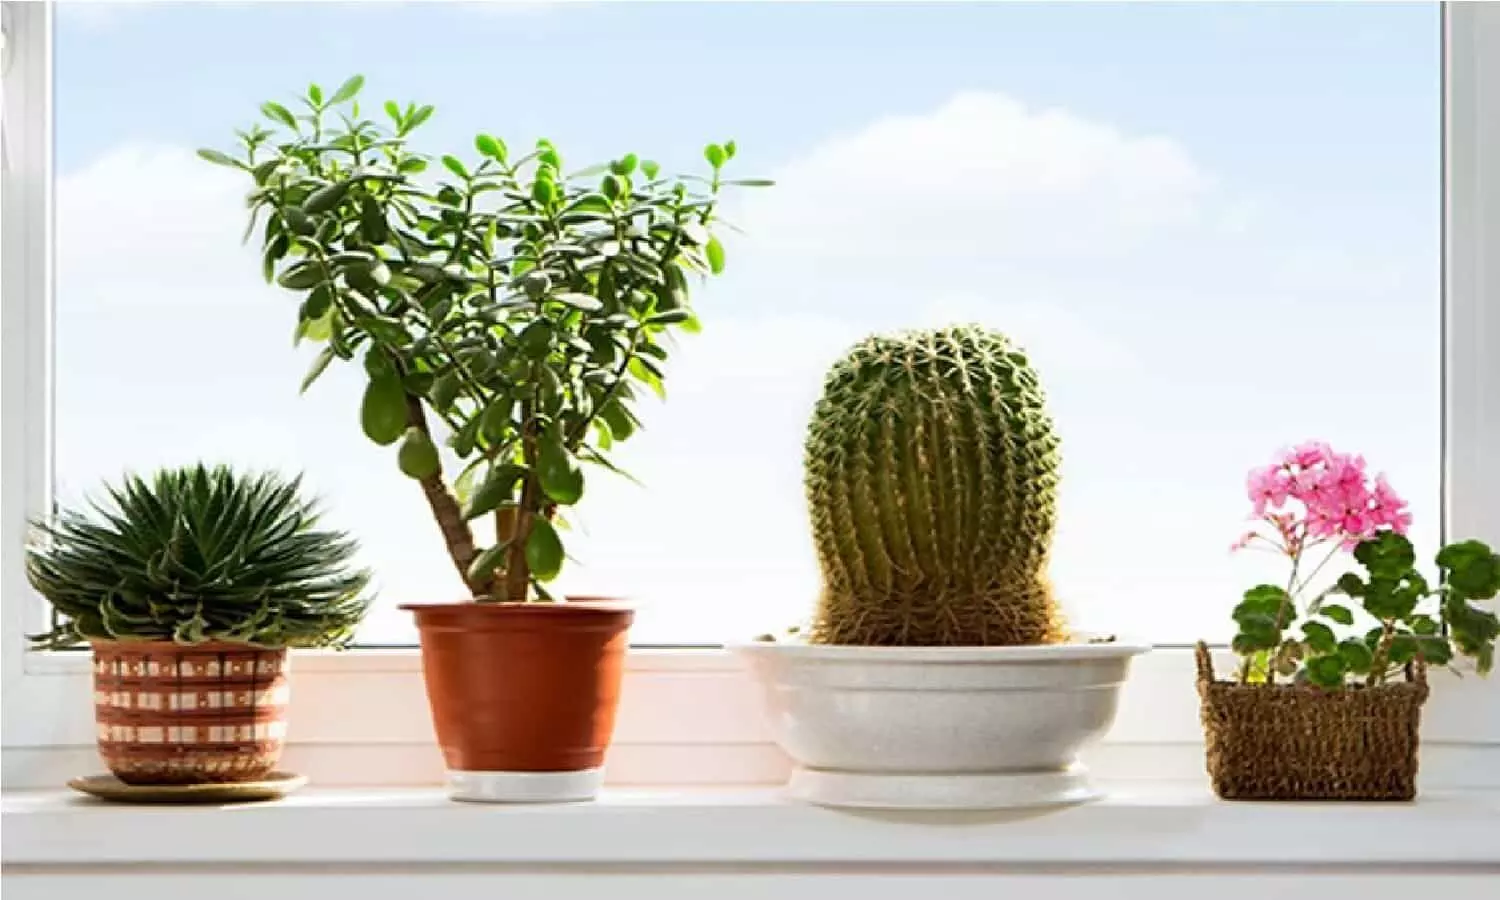 Plant Tips: परिवार की खुशियाँ छीन लेता है ये पौधा, घर में अगर लगाया है तो उखाड़ फेके